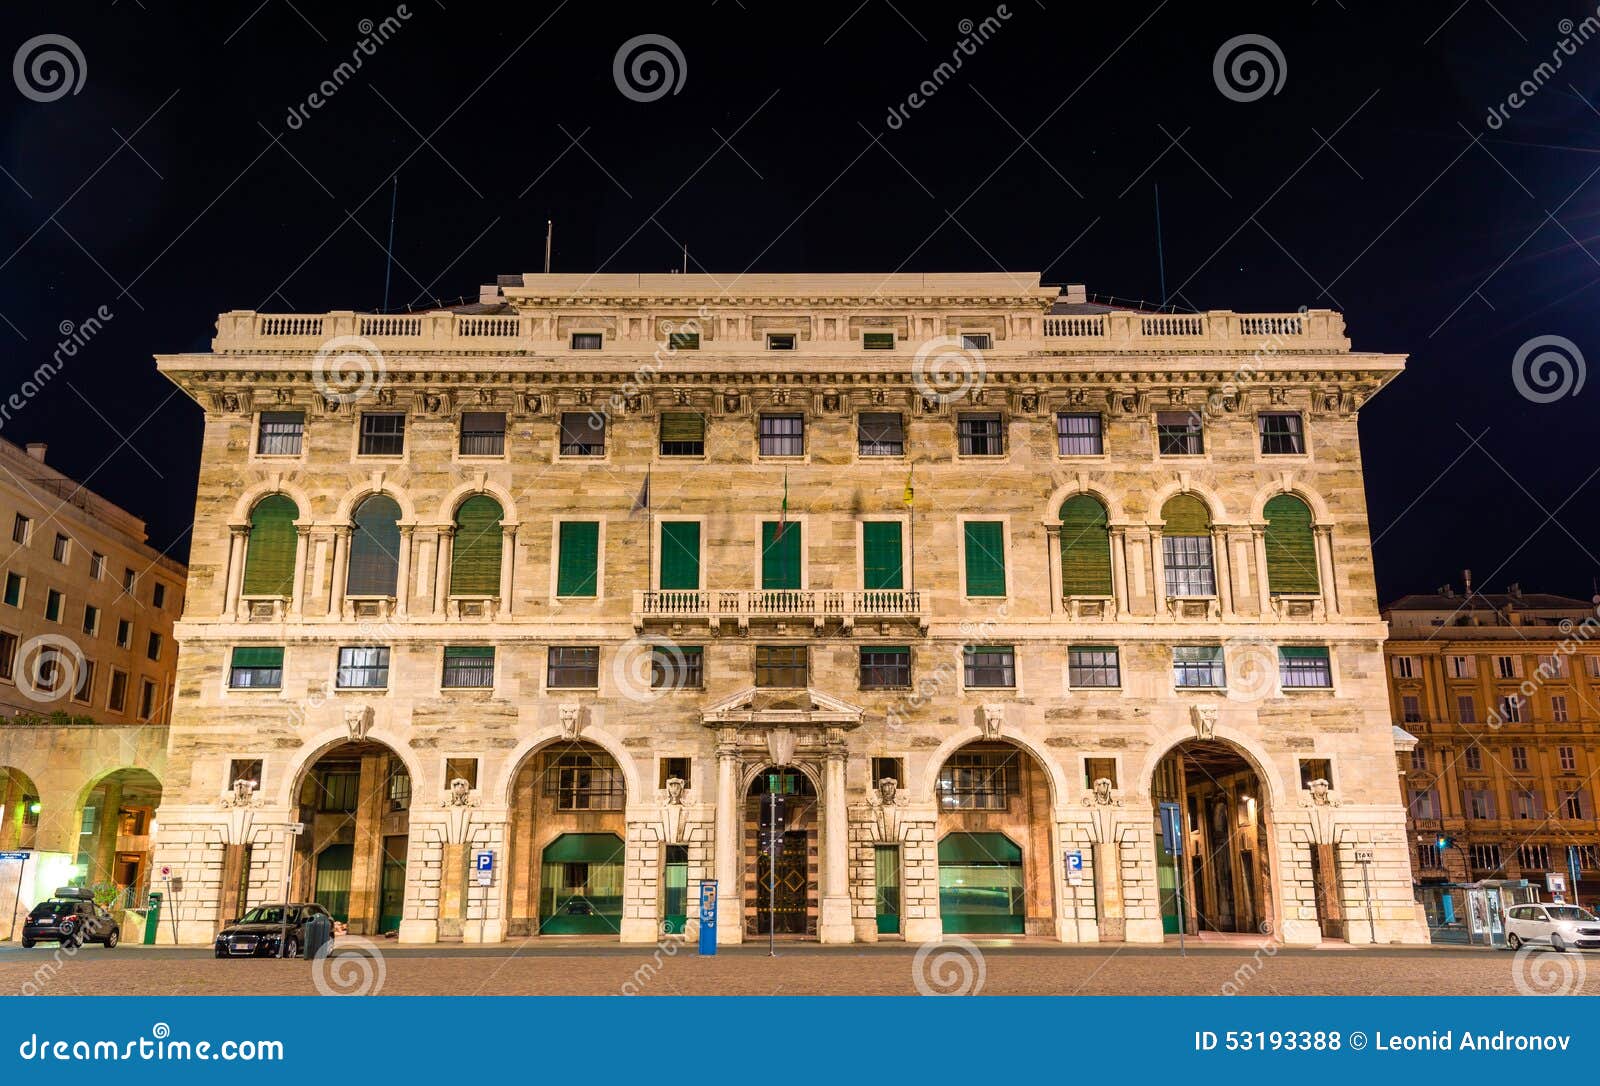 building on piazza della vittoria in genoa